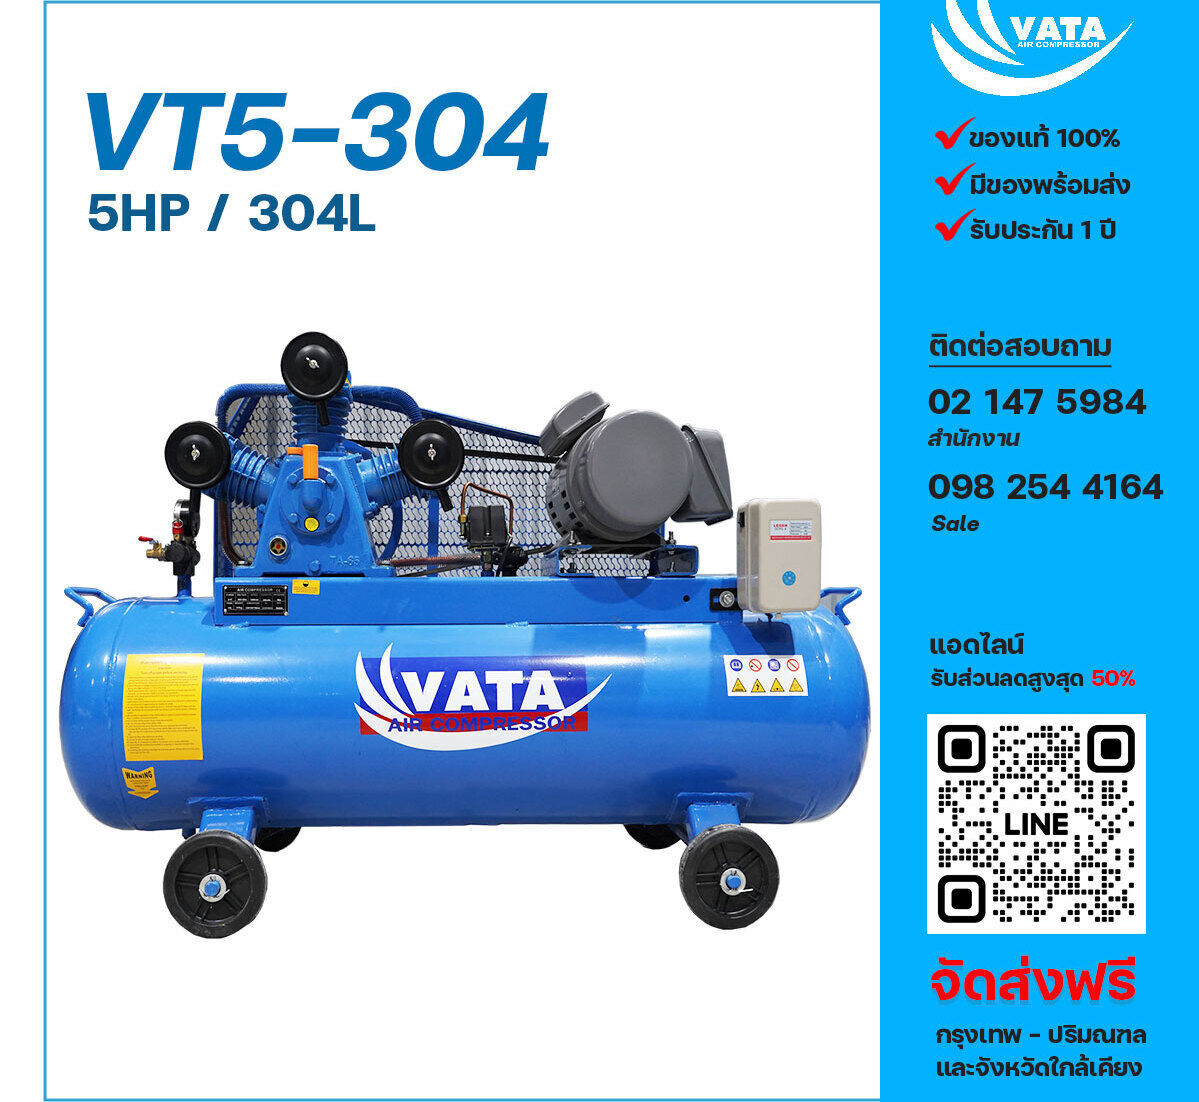 ปั๊มลมวาตะ VATA VT5-304 380V ปั๊มลมลูกสูบ ขนาด 3 สูบ 5 แรงม้า 304 ลิตร VATA พร้อมมอเตอร์ ไฟ 380V ส่งฟรี กรุงเทพฯ-ปริมณฑล รับประกัน 1 ปี